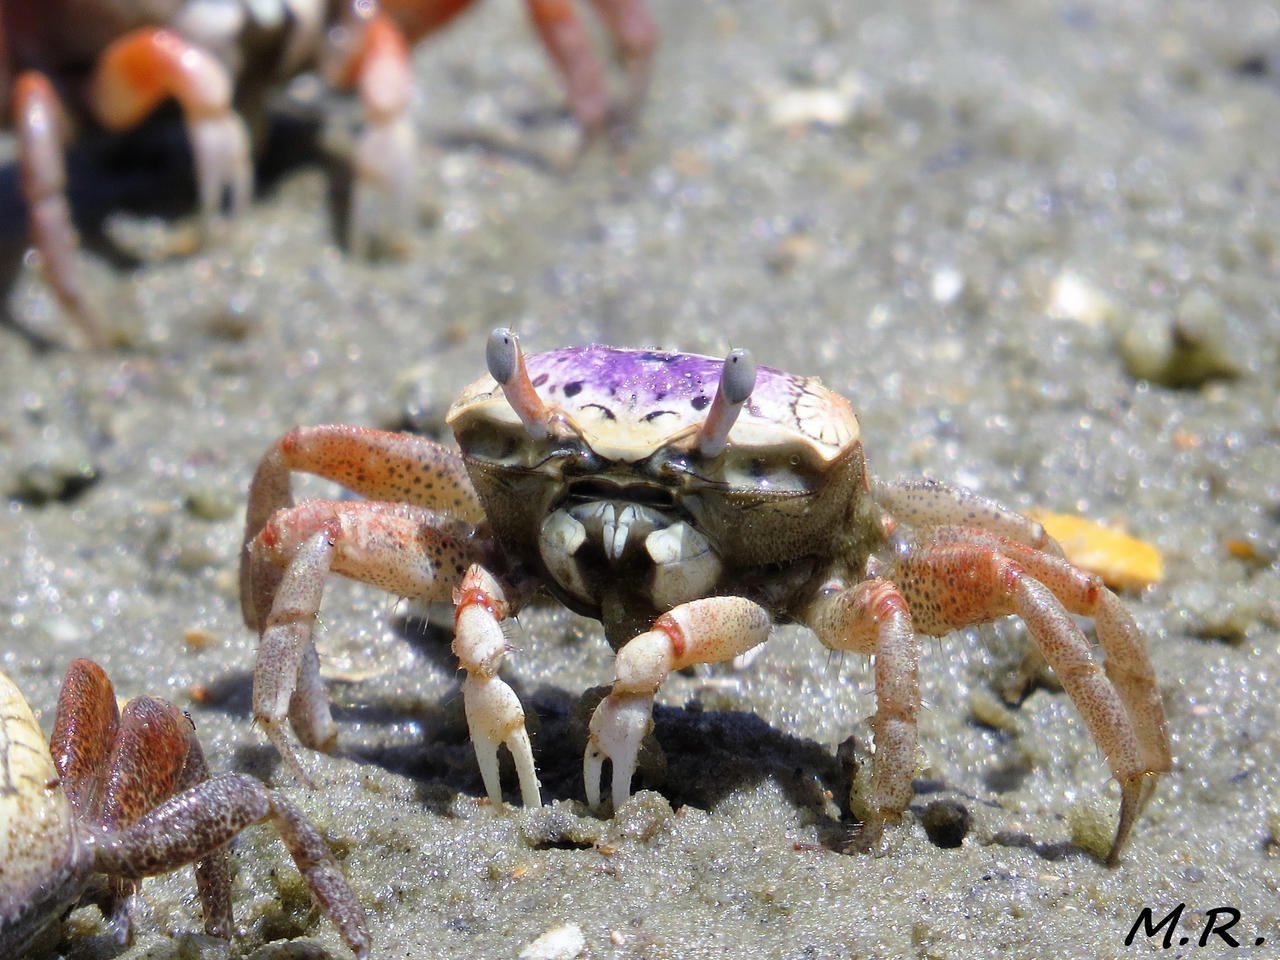 Female Fiddler Crab by DarkChaosMR on DeviantArt